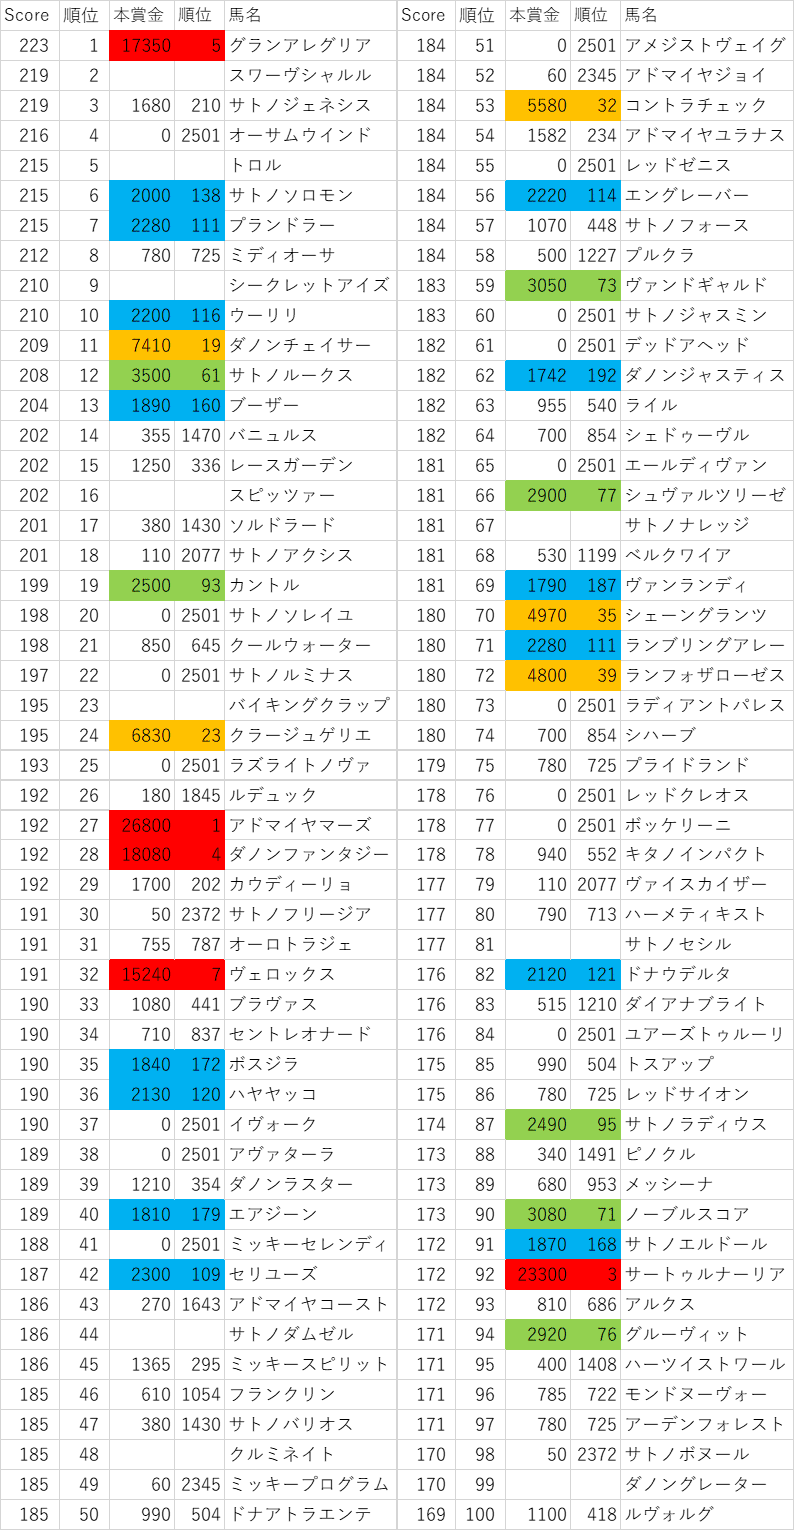 2016年産駒スコア1~100位